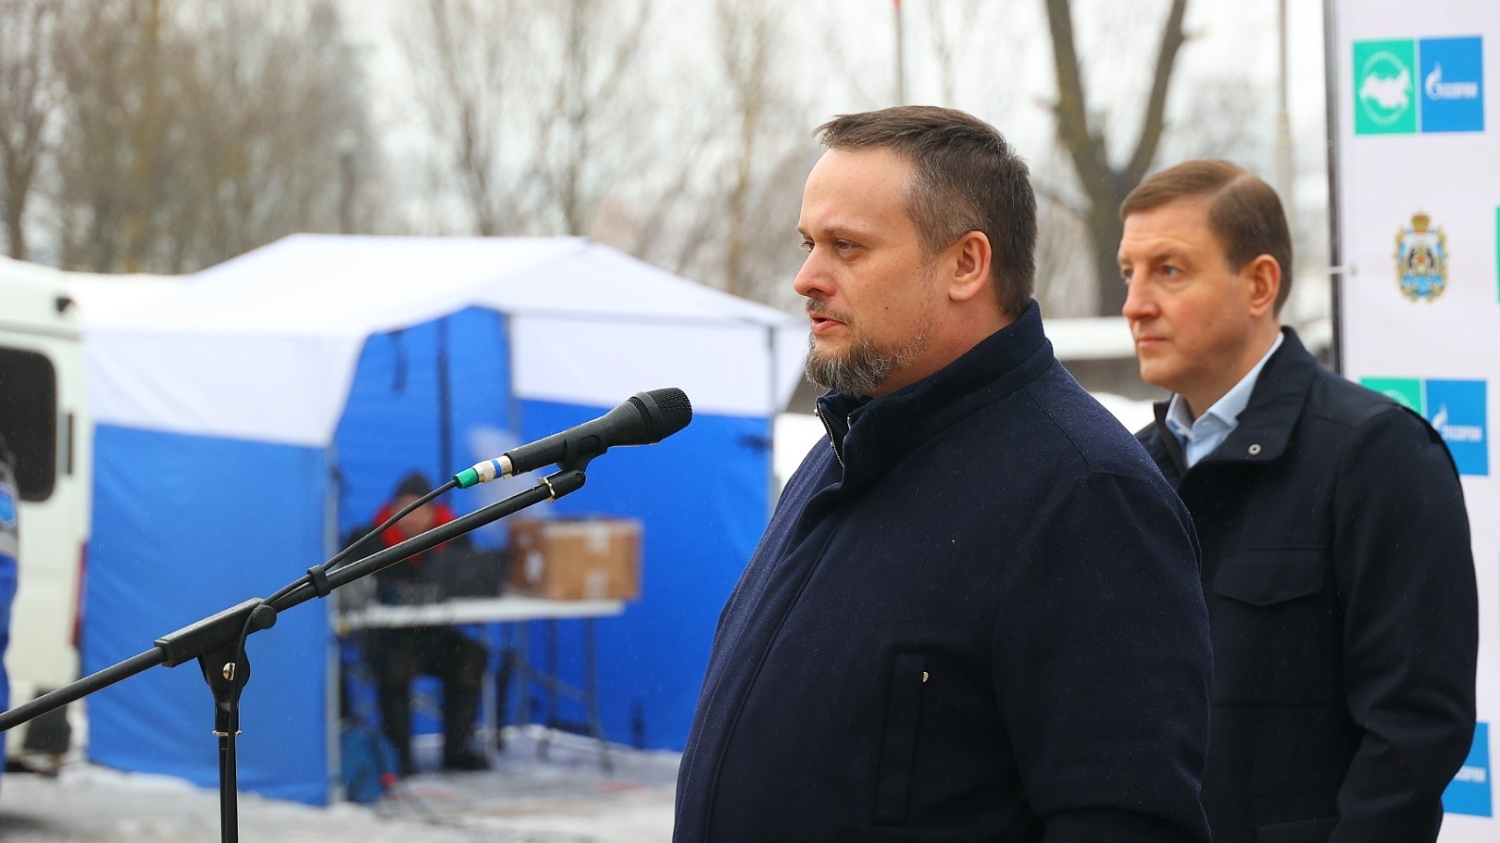 Новый межпоселковый газопровод ввели в эксплуатацию в Мошенском районе Новгородской области